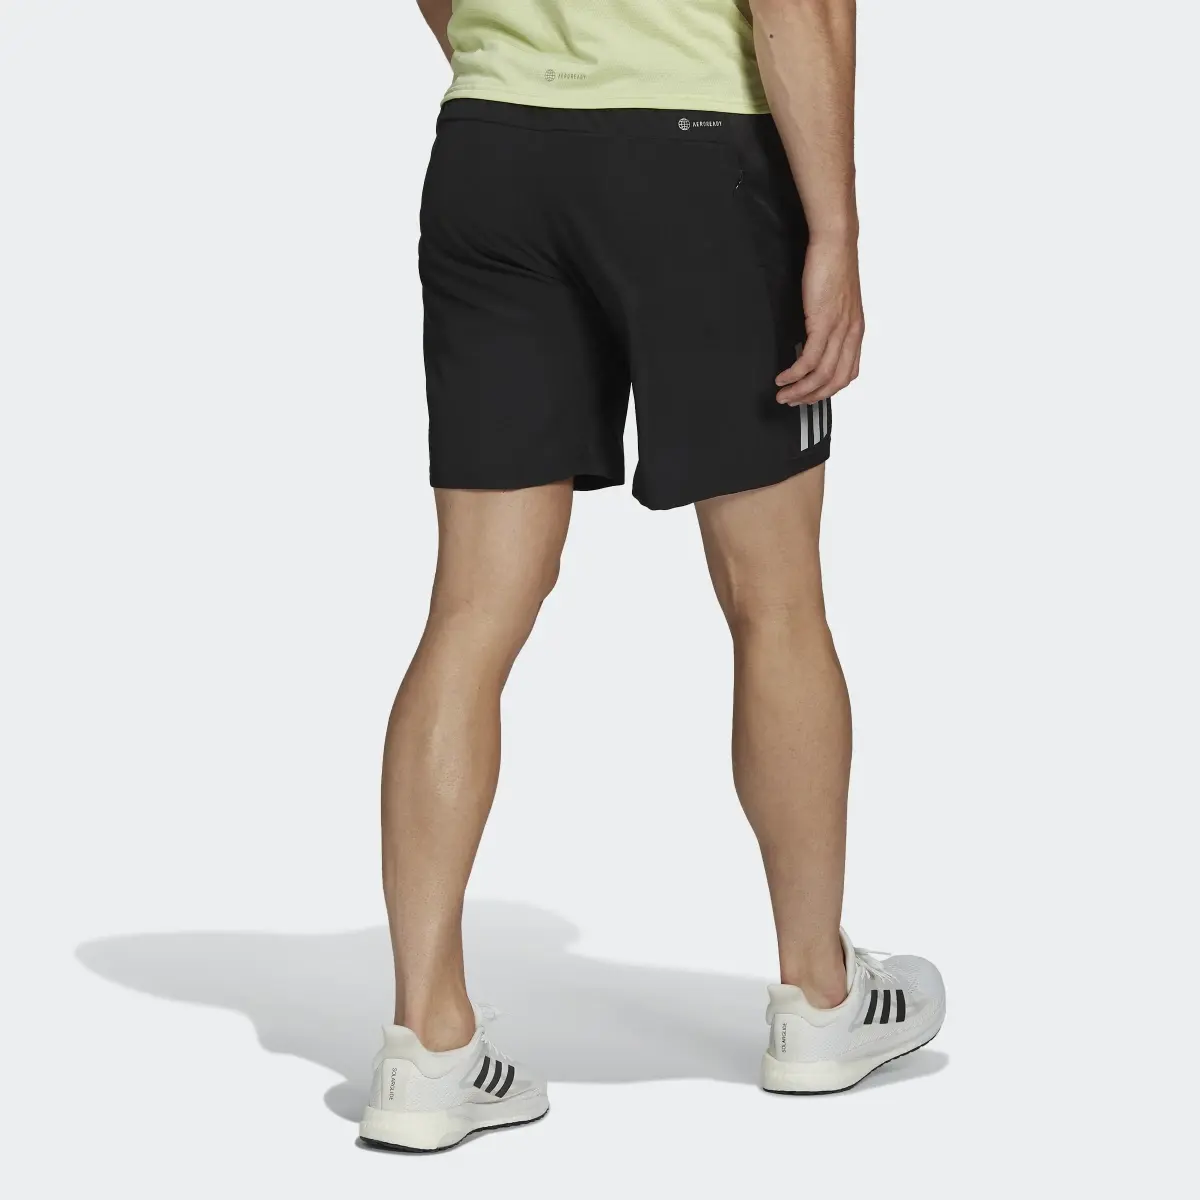 Adidas Own the Run Shorts. 3